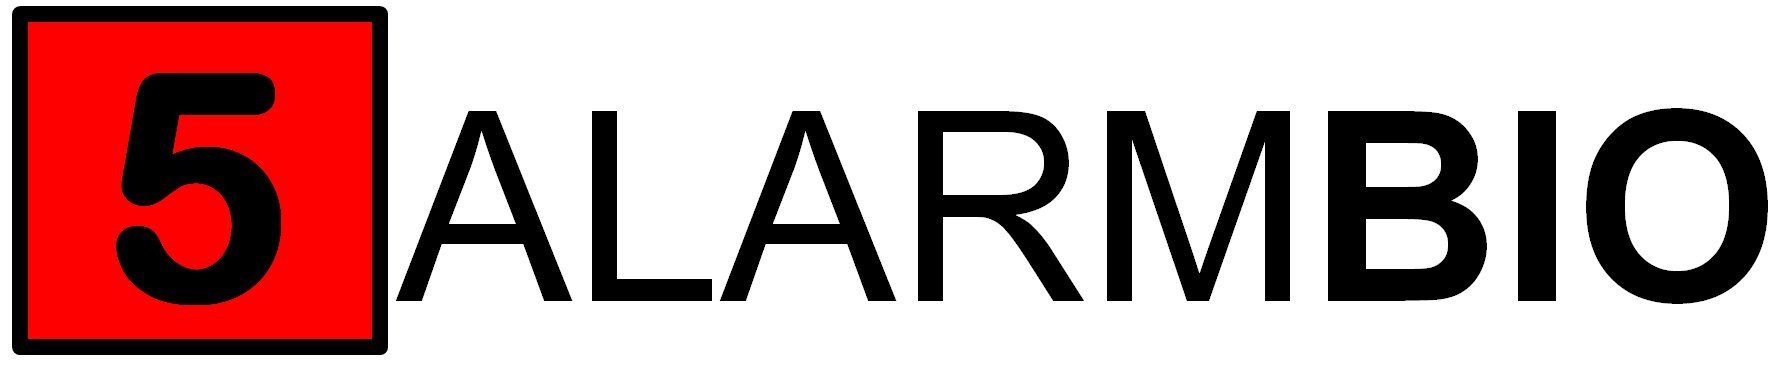 FAB-logo.jpg